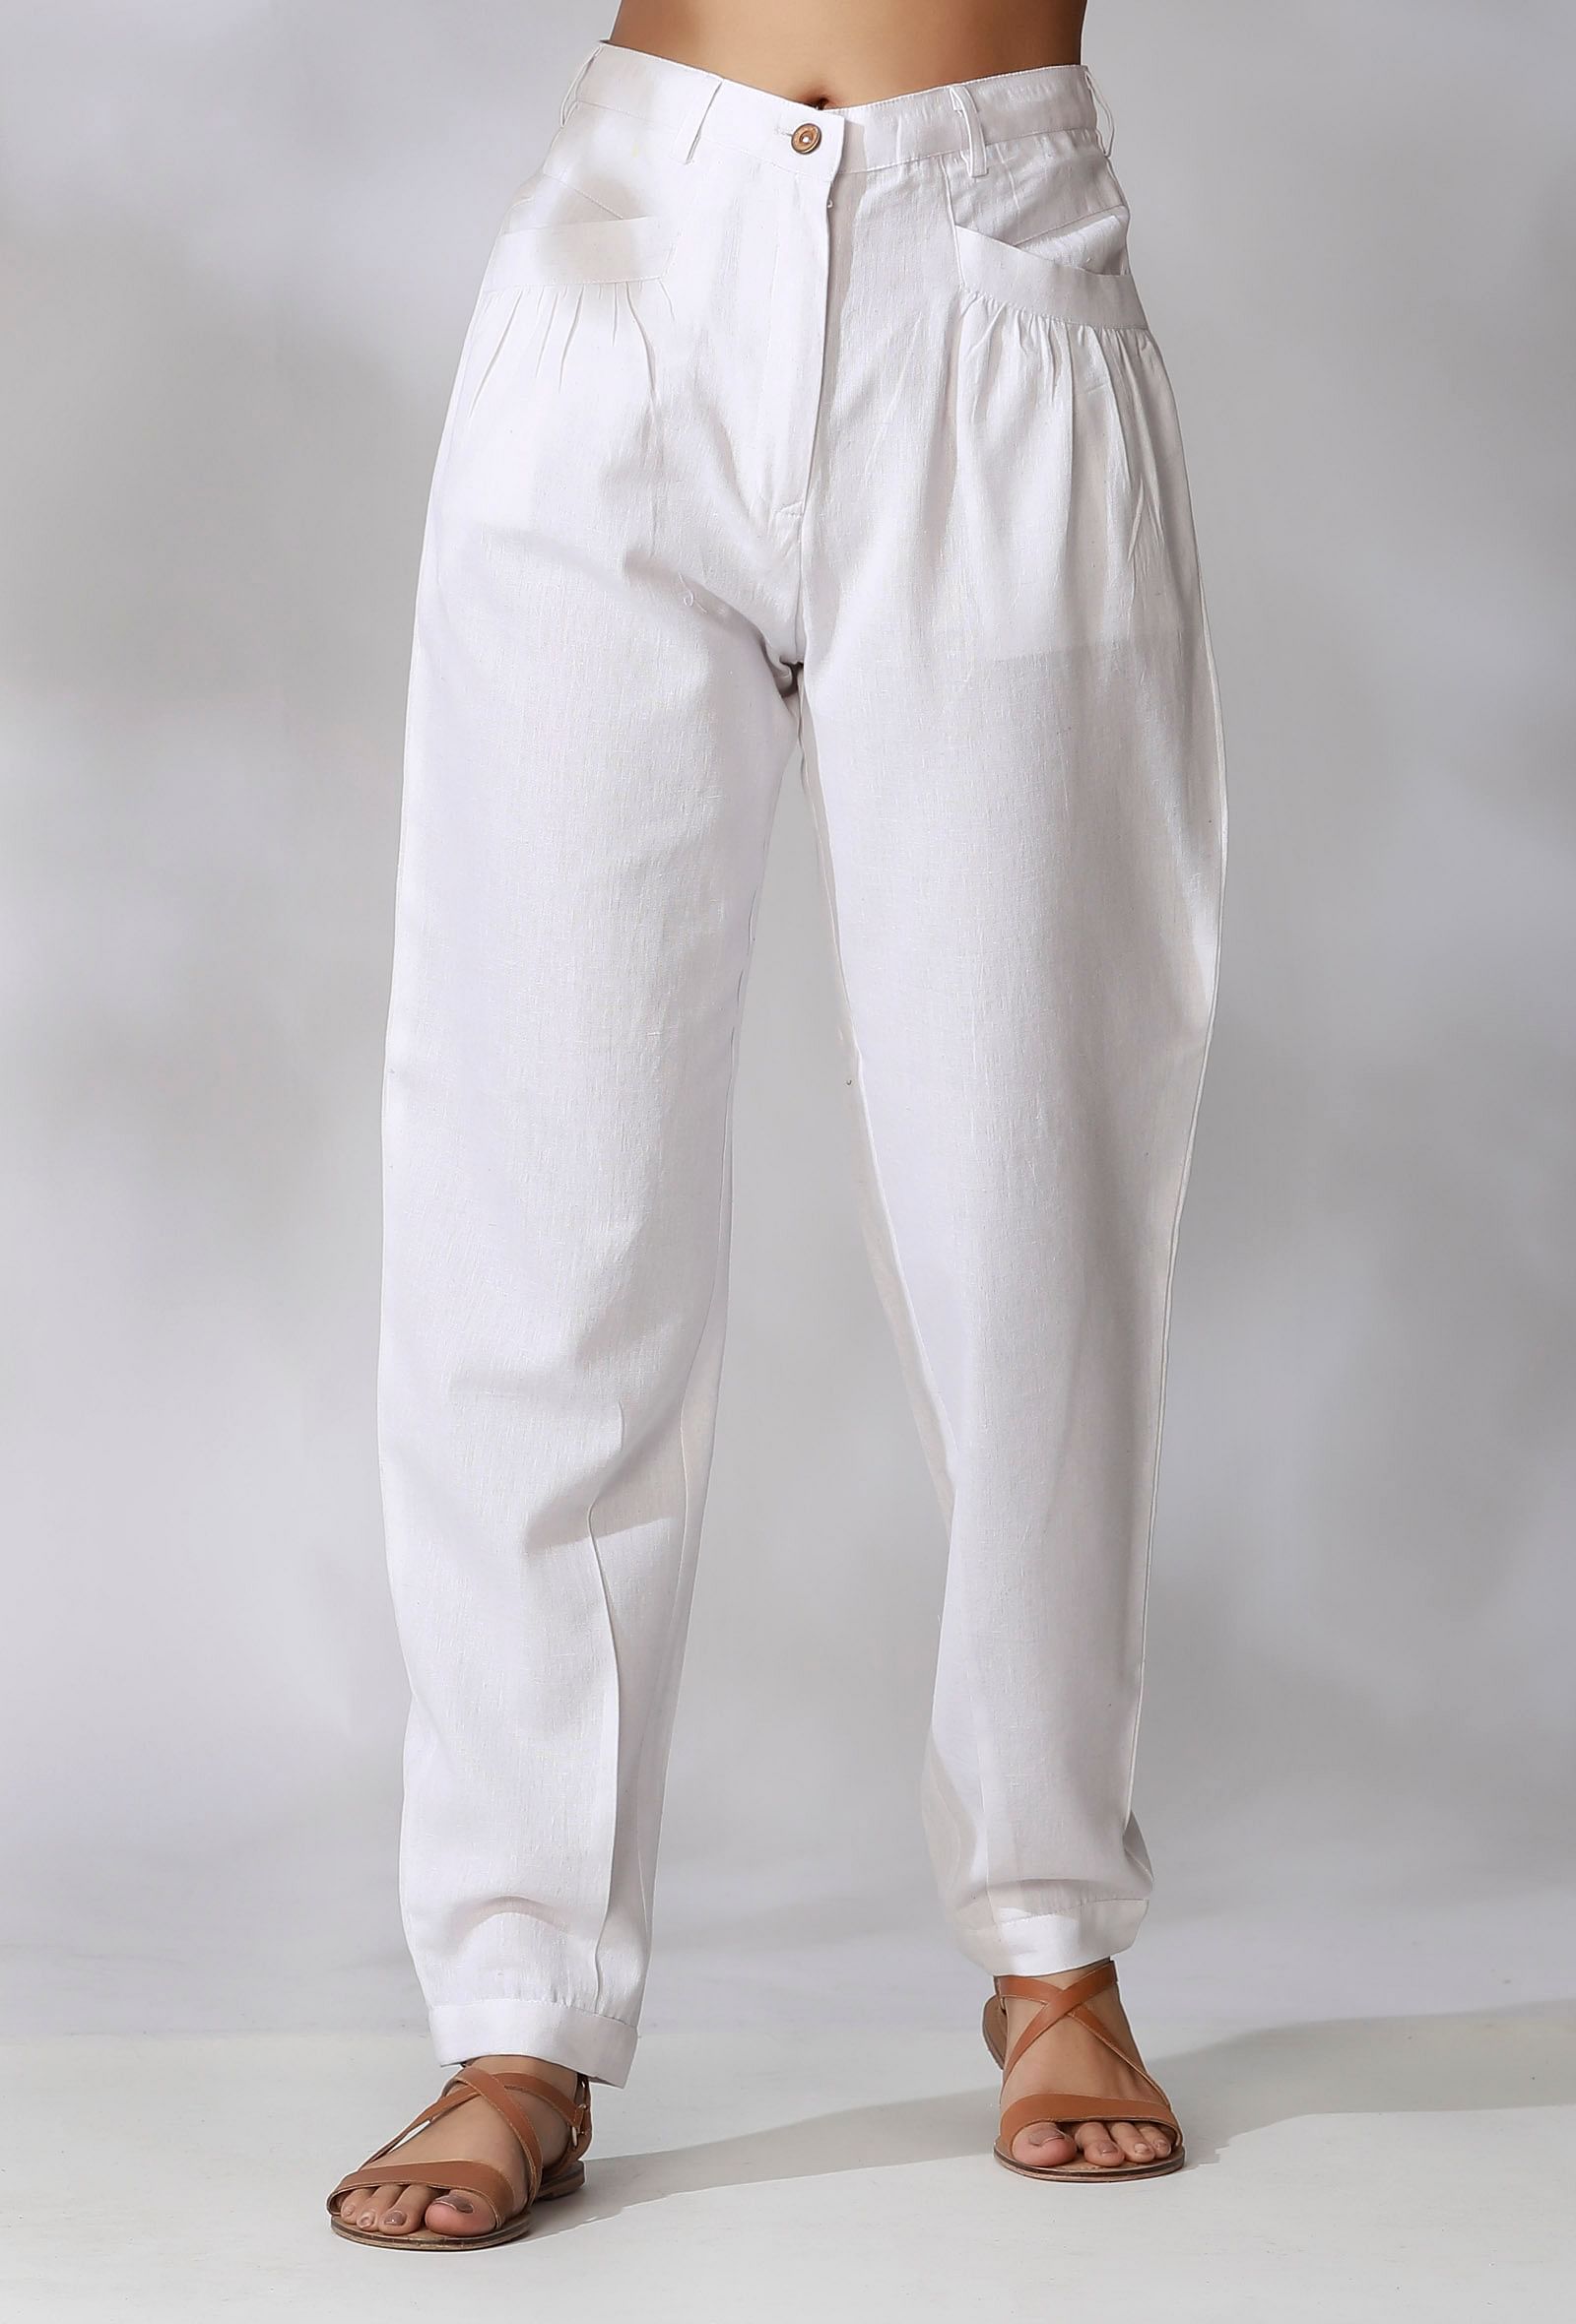 Men's White Dress Pants | Nordstrom